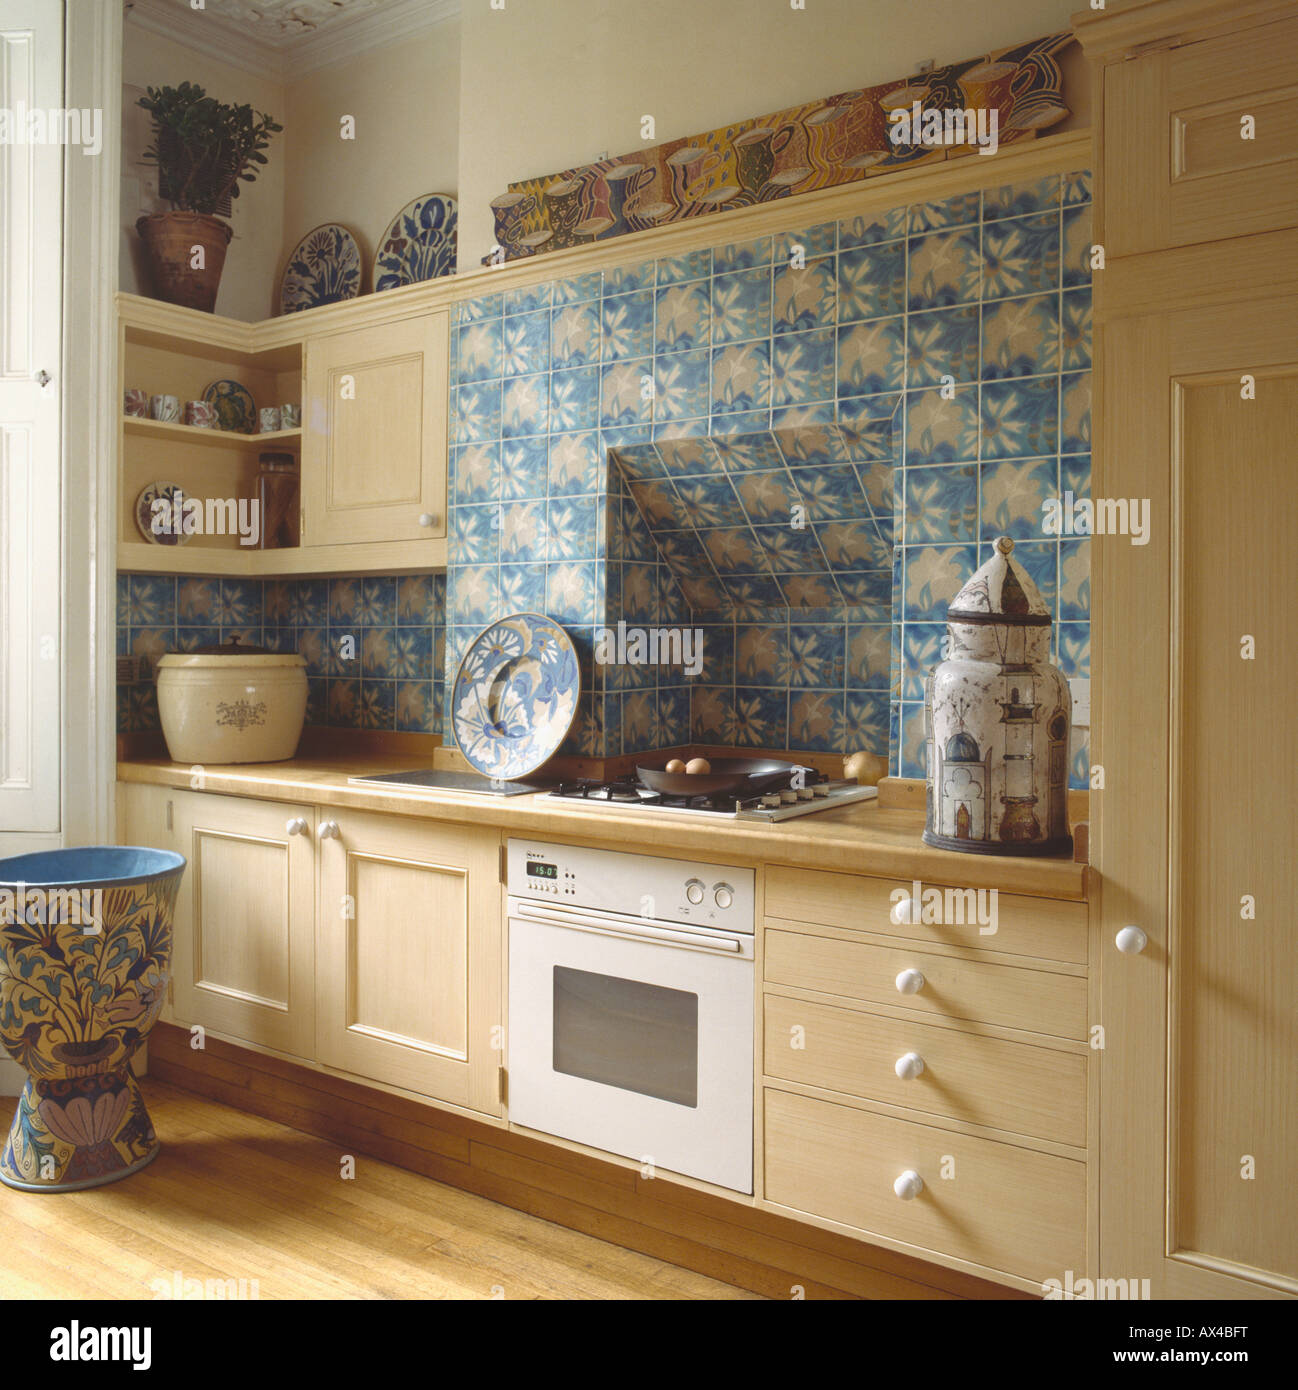 Con motivi floreali blu sopra le piastrelle bianco costruito nel forno in posizione di folle degli anni ottanta cucina con grande ornamentali in ceramica pentola Foto Stock